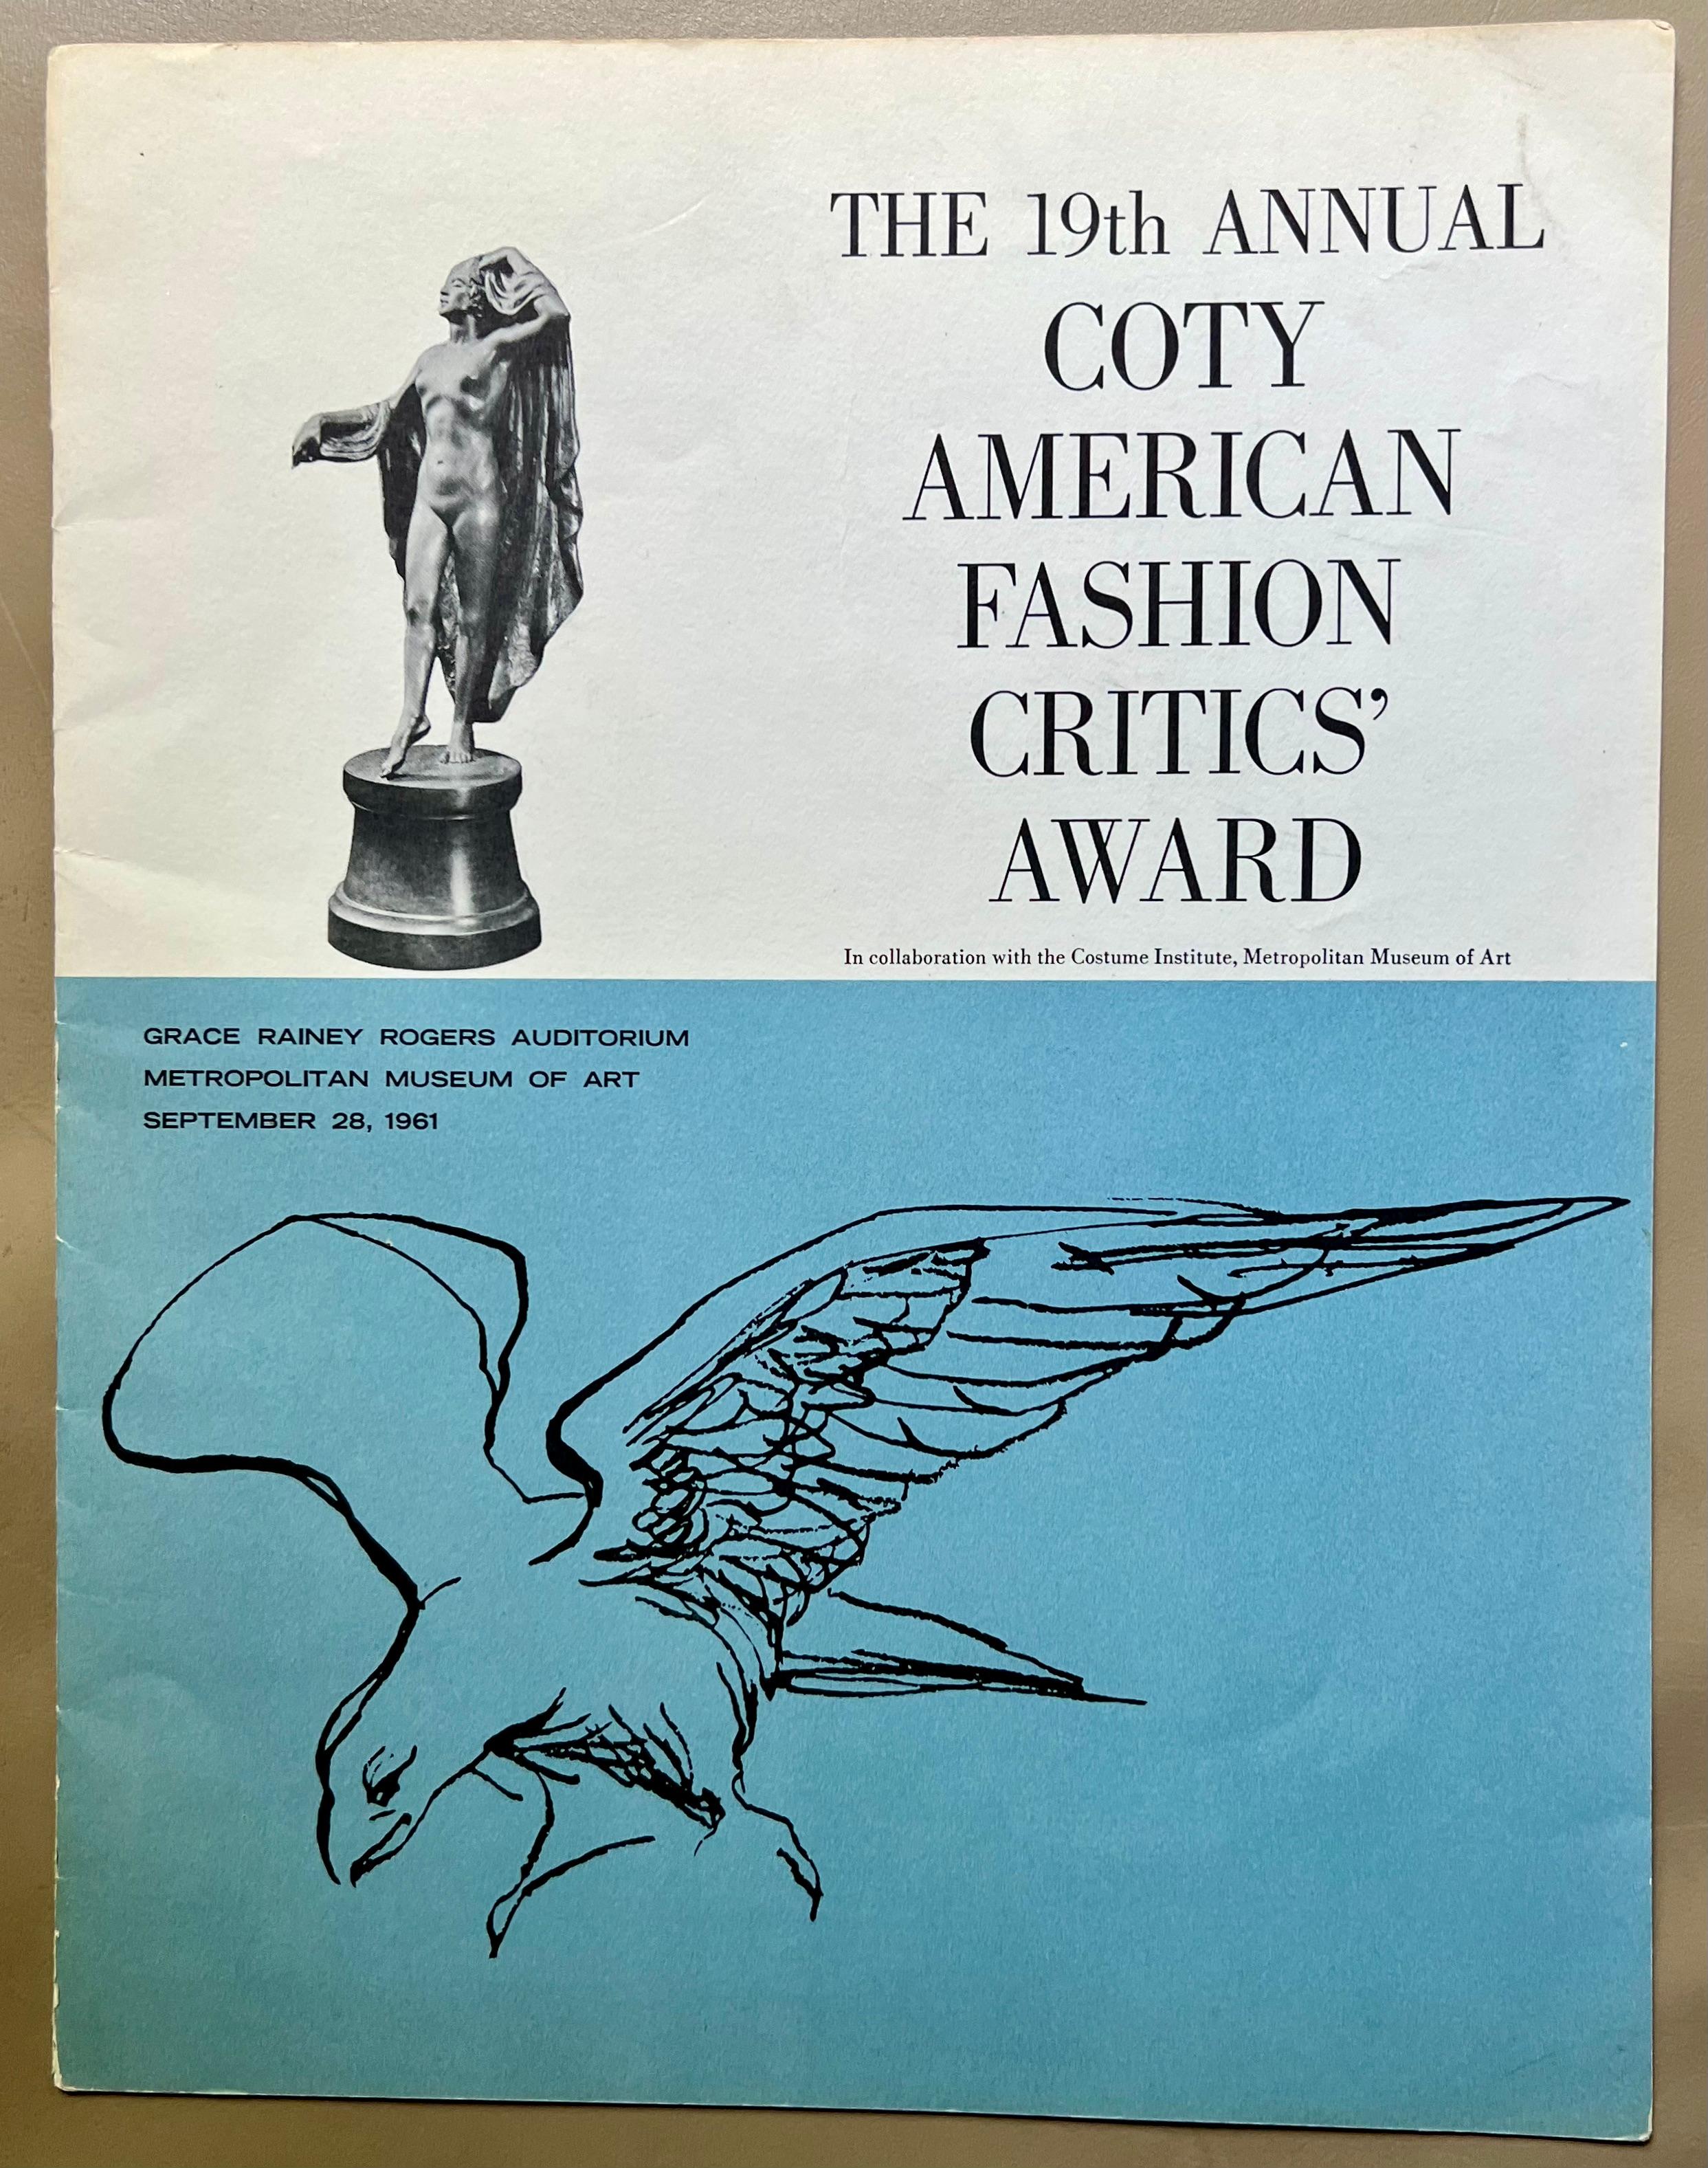 1961 Plaque du Prix Coty Kenneth Coiffeur Jacqueline Onassis Bronze Mode

Bronze sur bois. La plaque en bois mesure 12 3/4